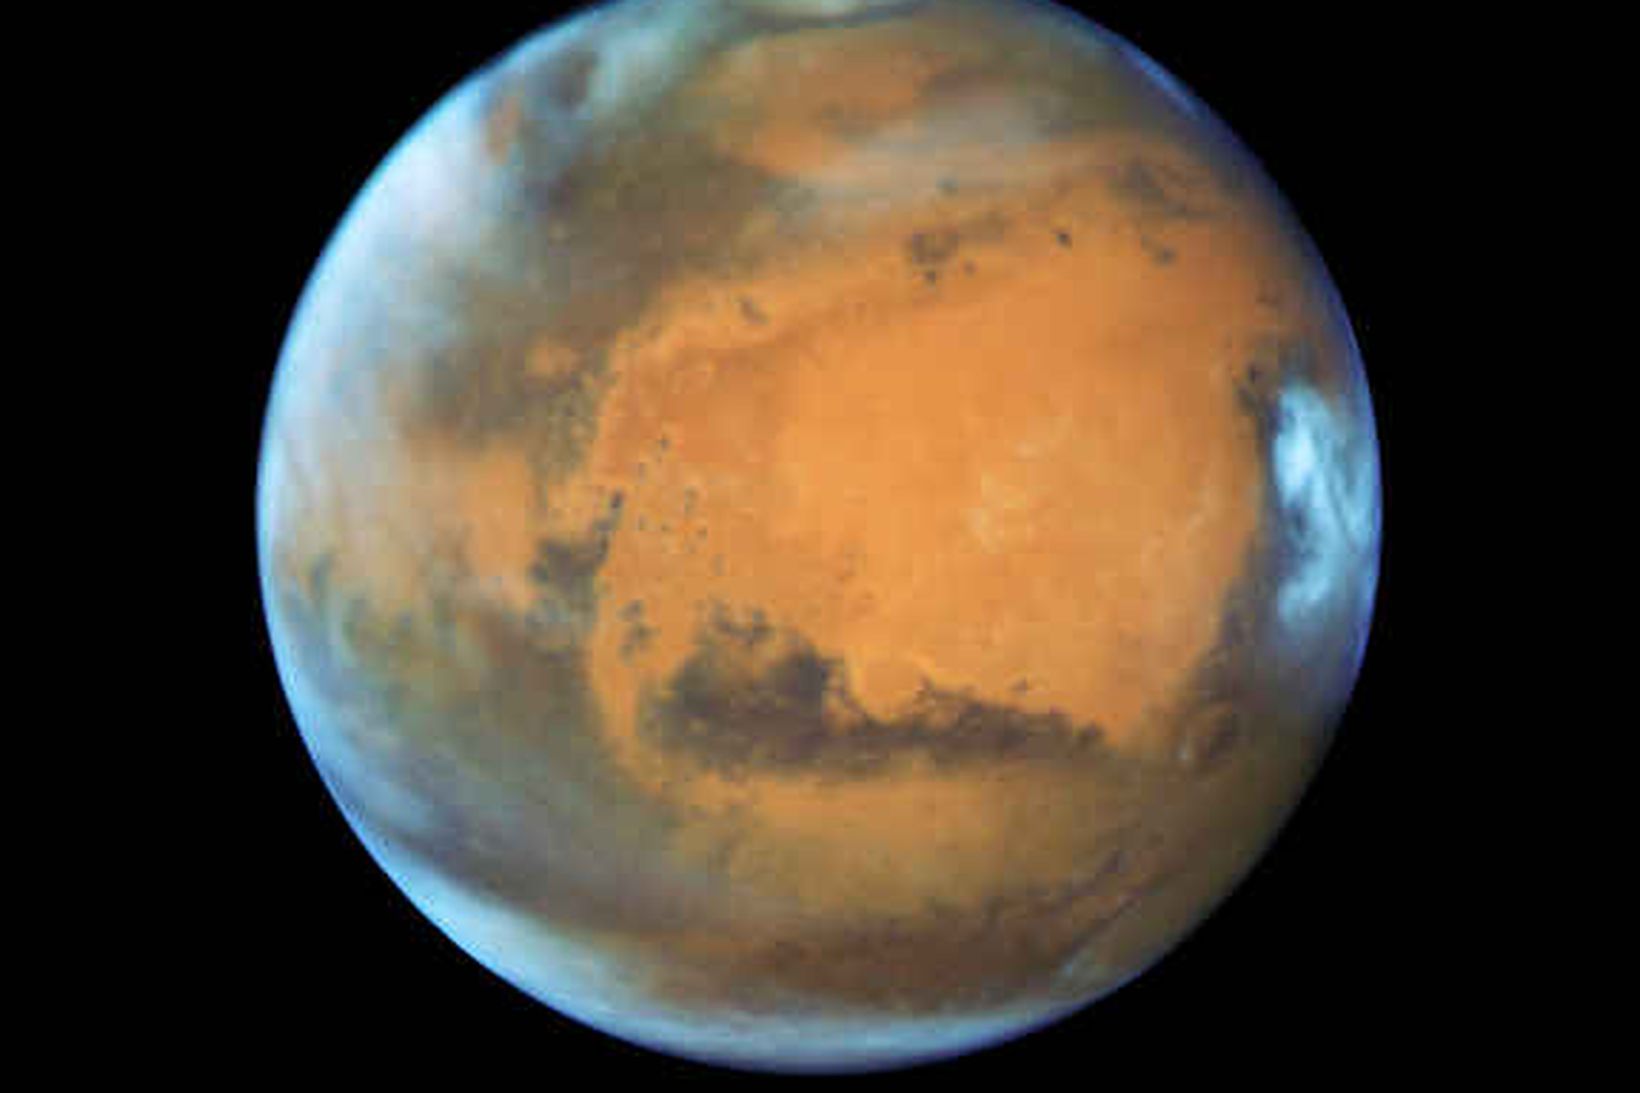 Mynd sem Hubble-geimsjónaukinn tók af Mars 12. maí.